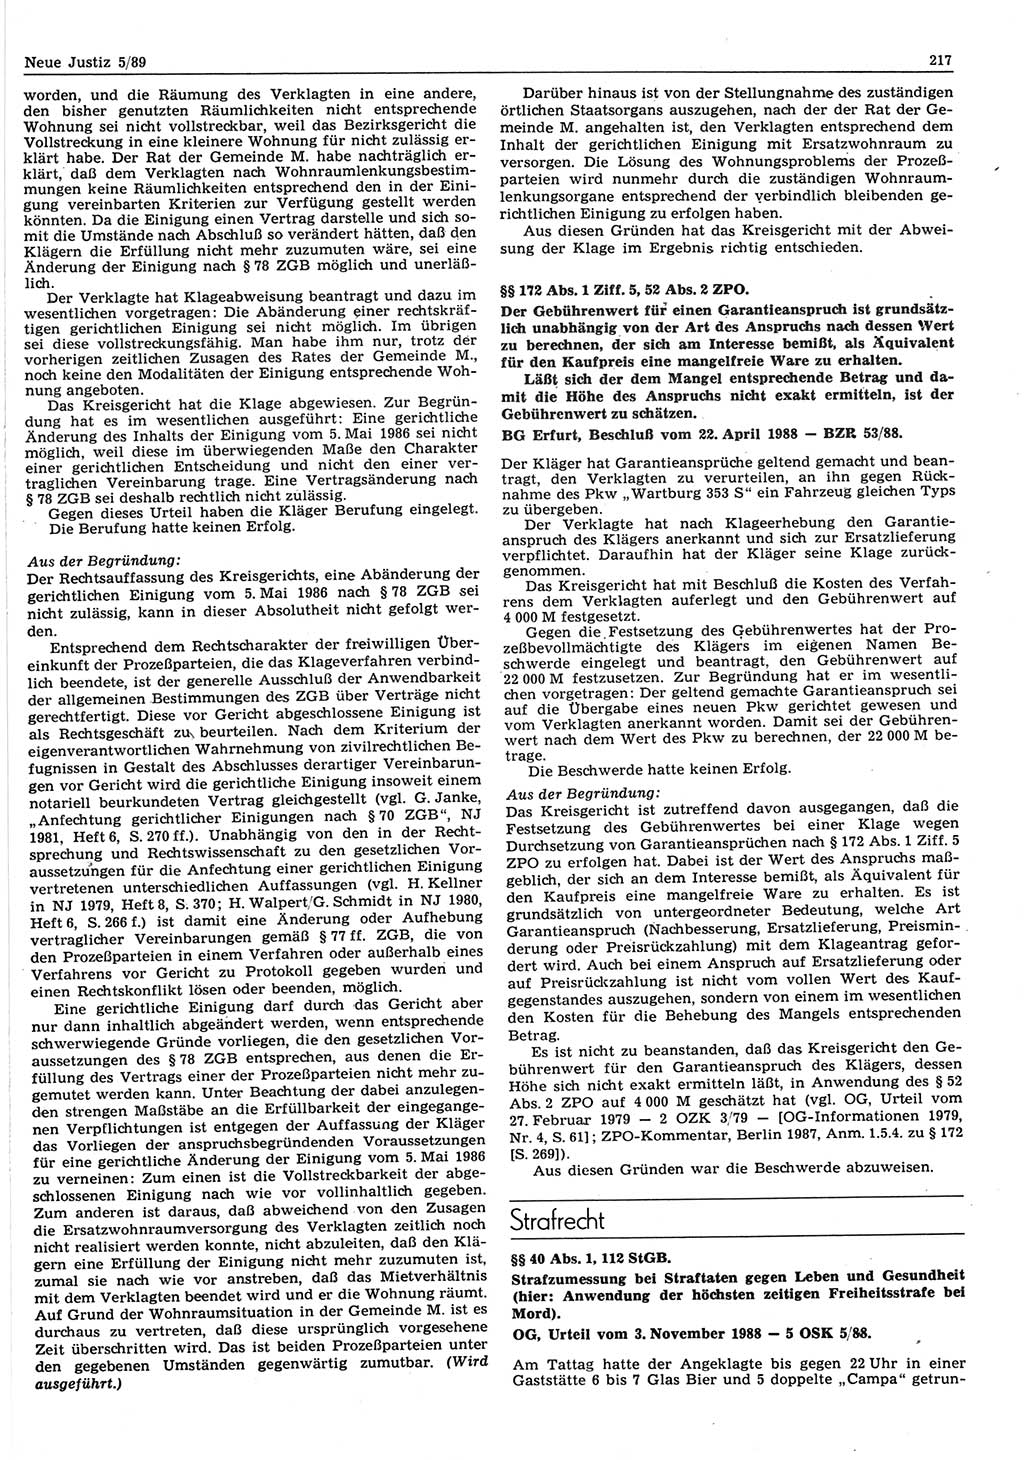 Neue Justiz (NJ), Zeitschrift für sozialistisches Recht und Gesetzlichkeit [Deutsche Demokratische Republik (DDR)], 43. Jahrgang 1989, Seite 217 (NJ DDR 1989, S. 217)